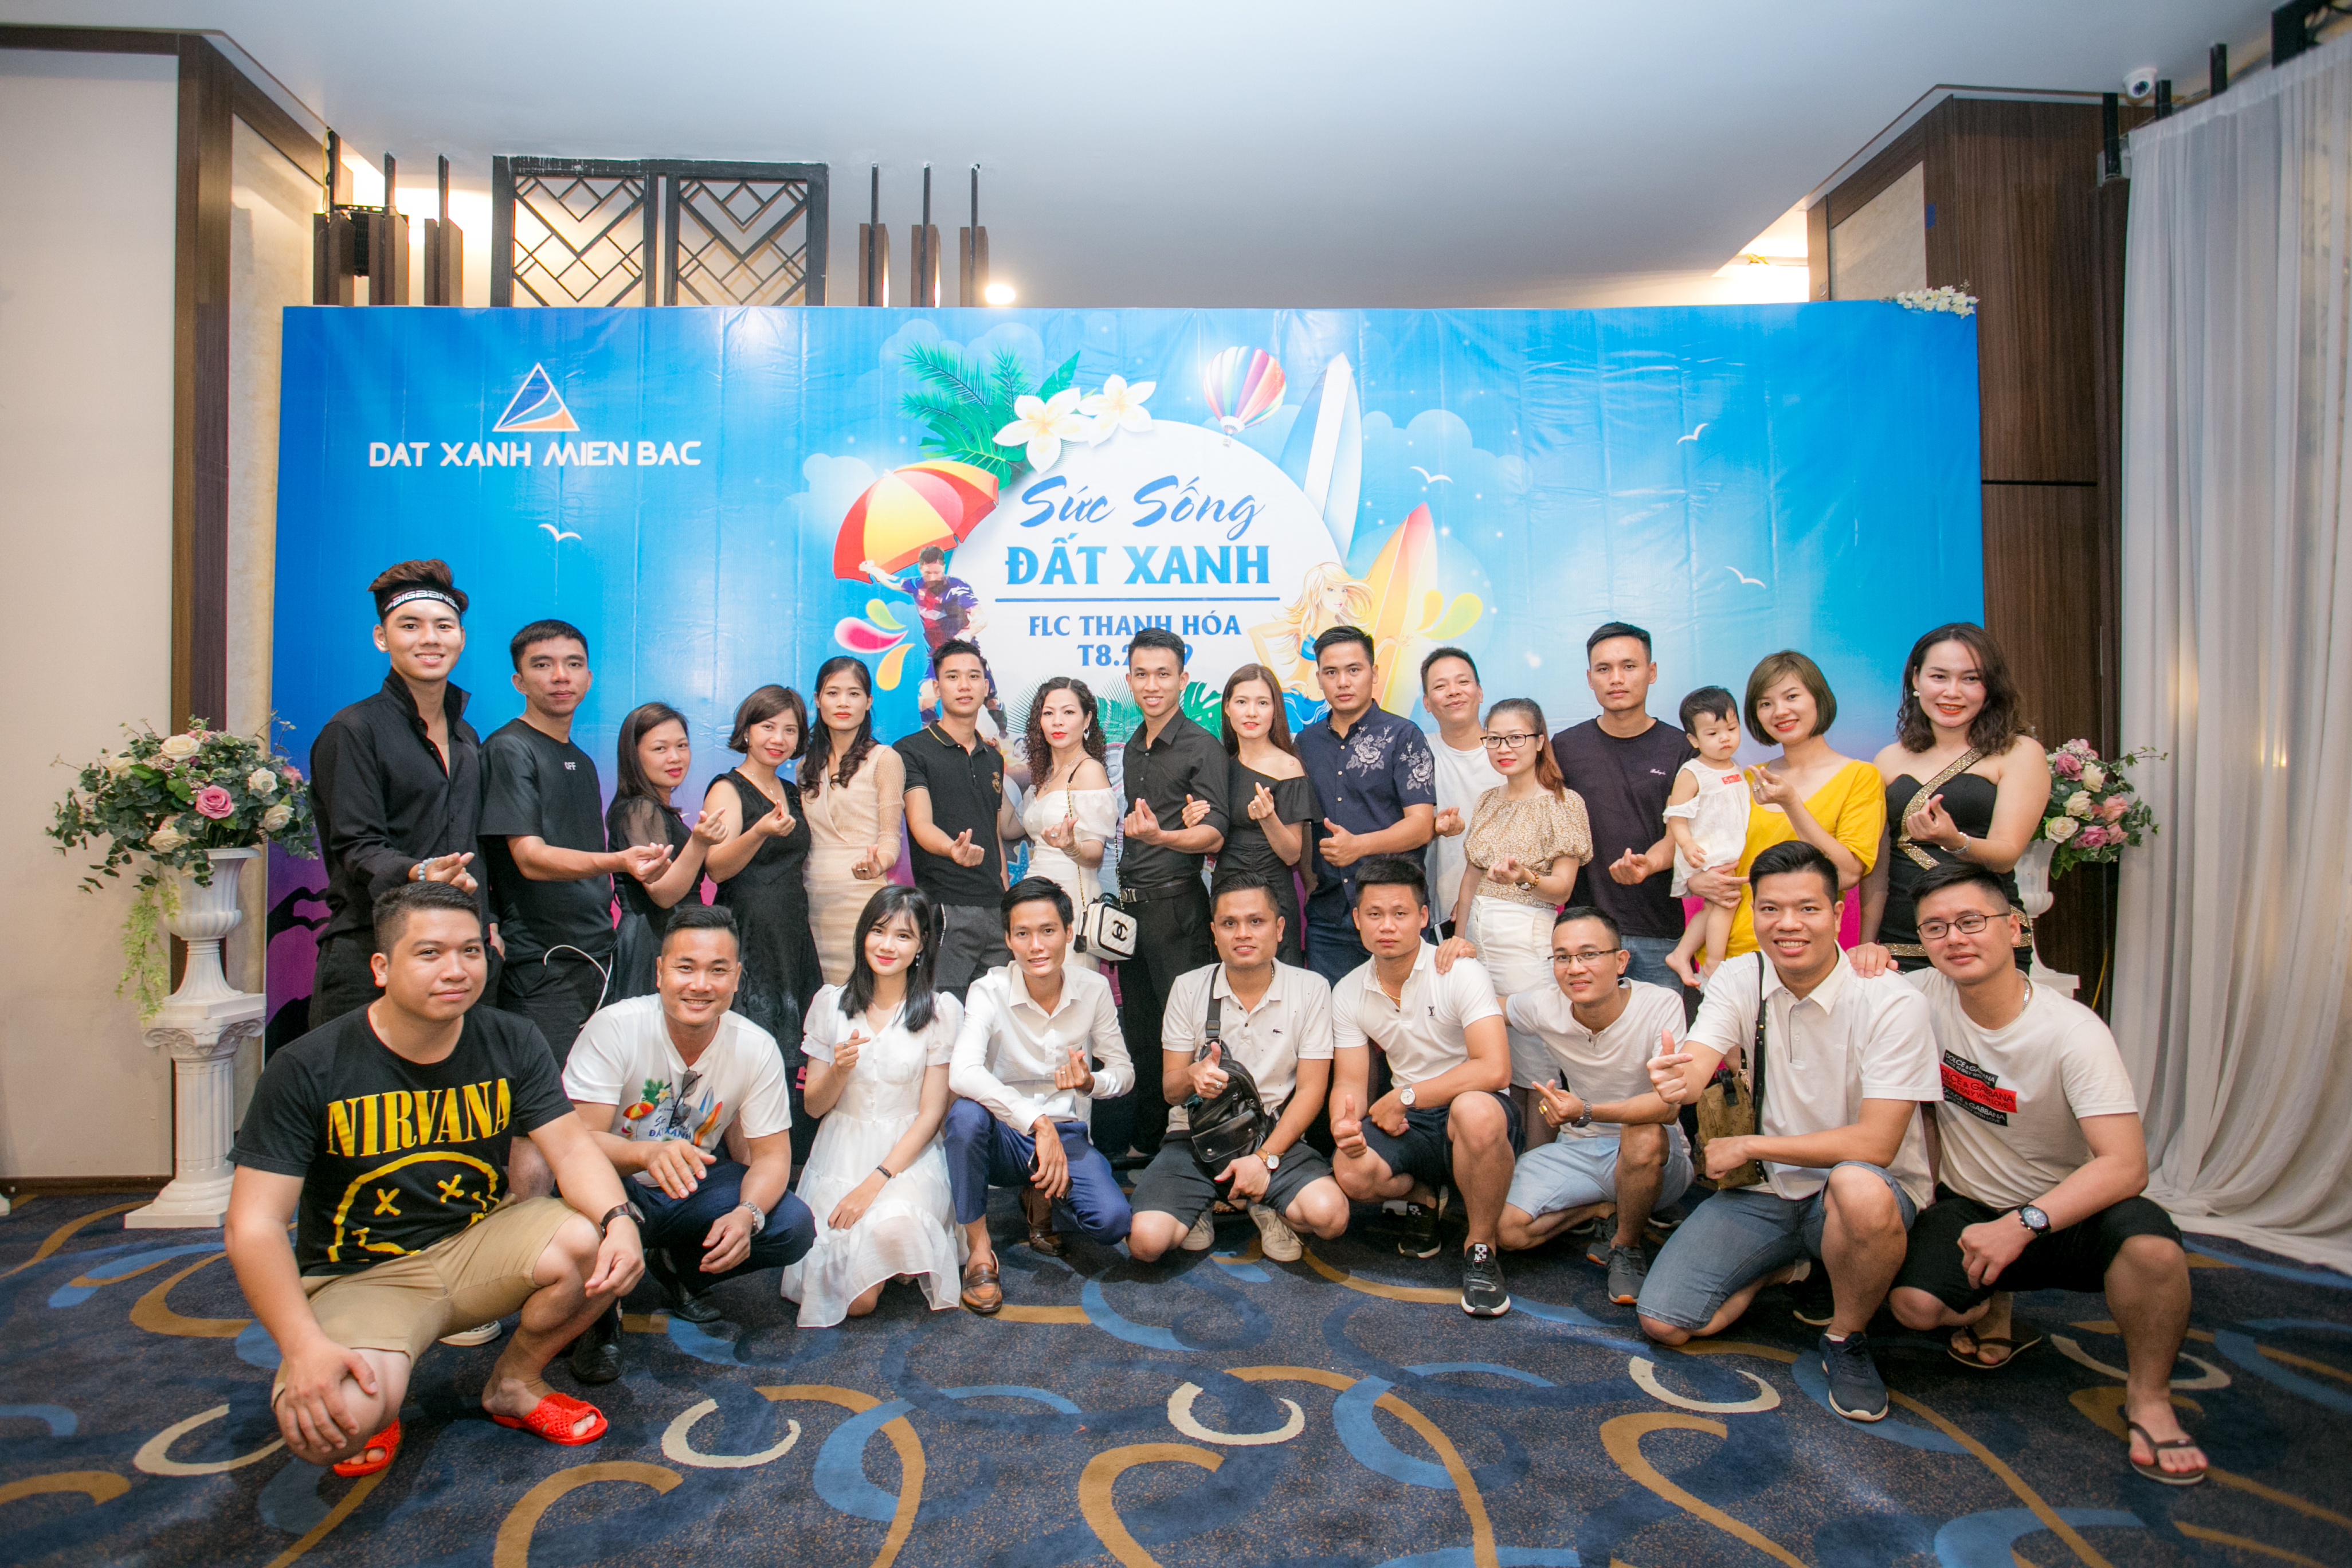 Sức sống Đất Xanh - Team Building 2019